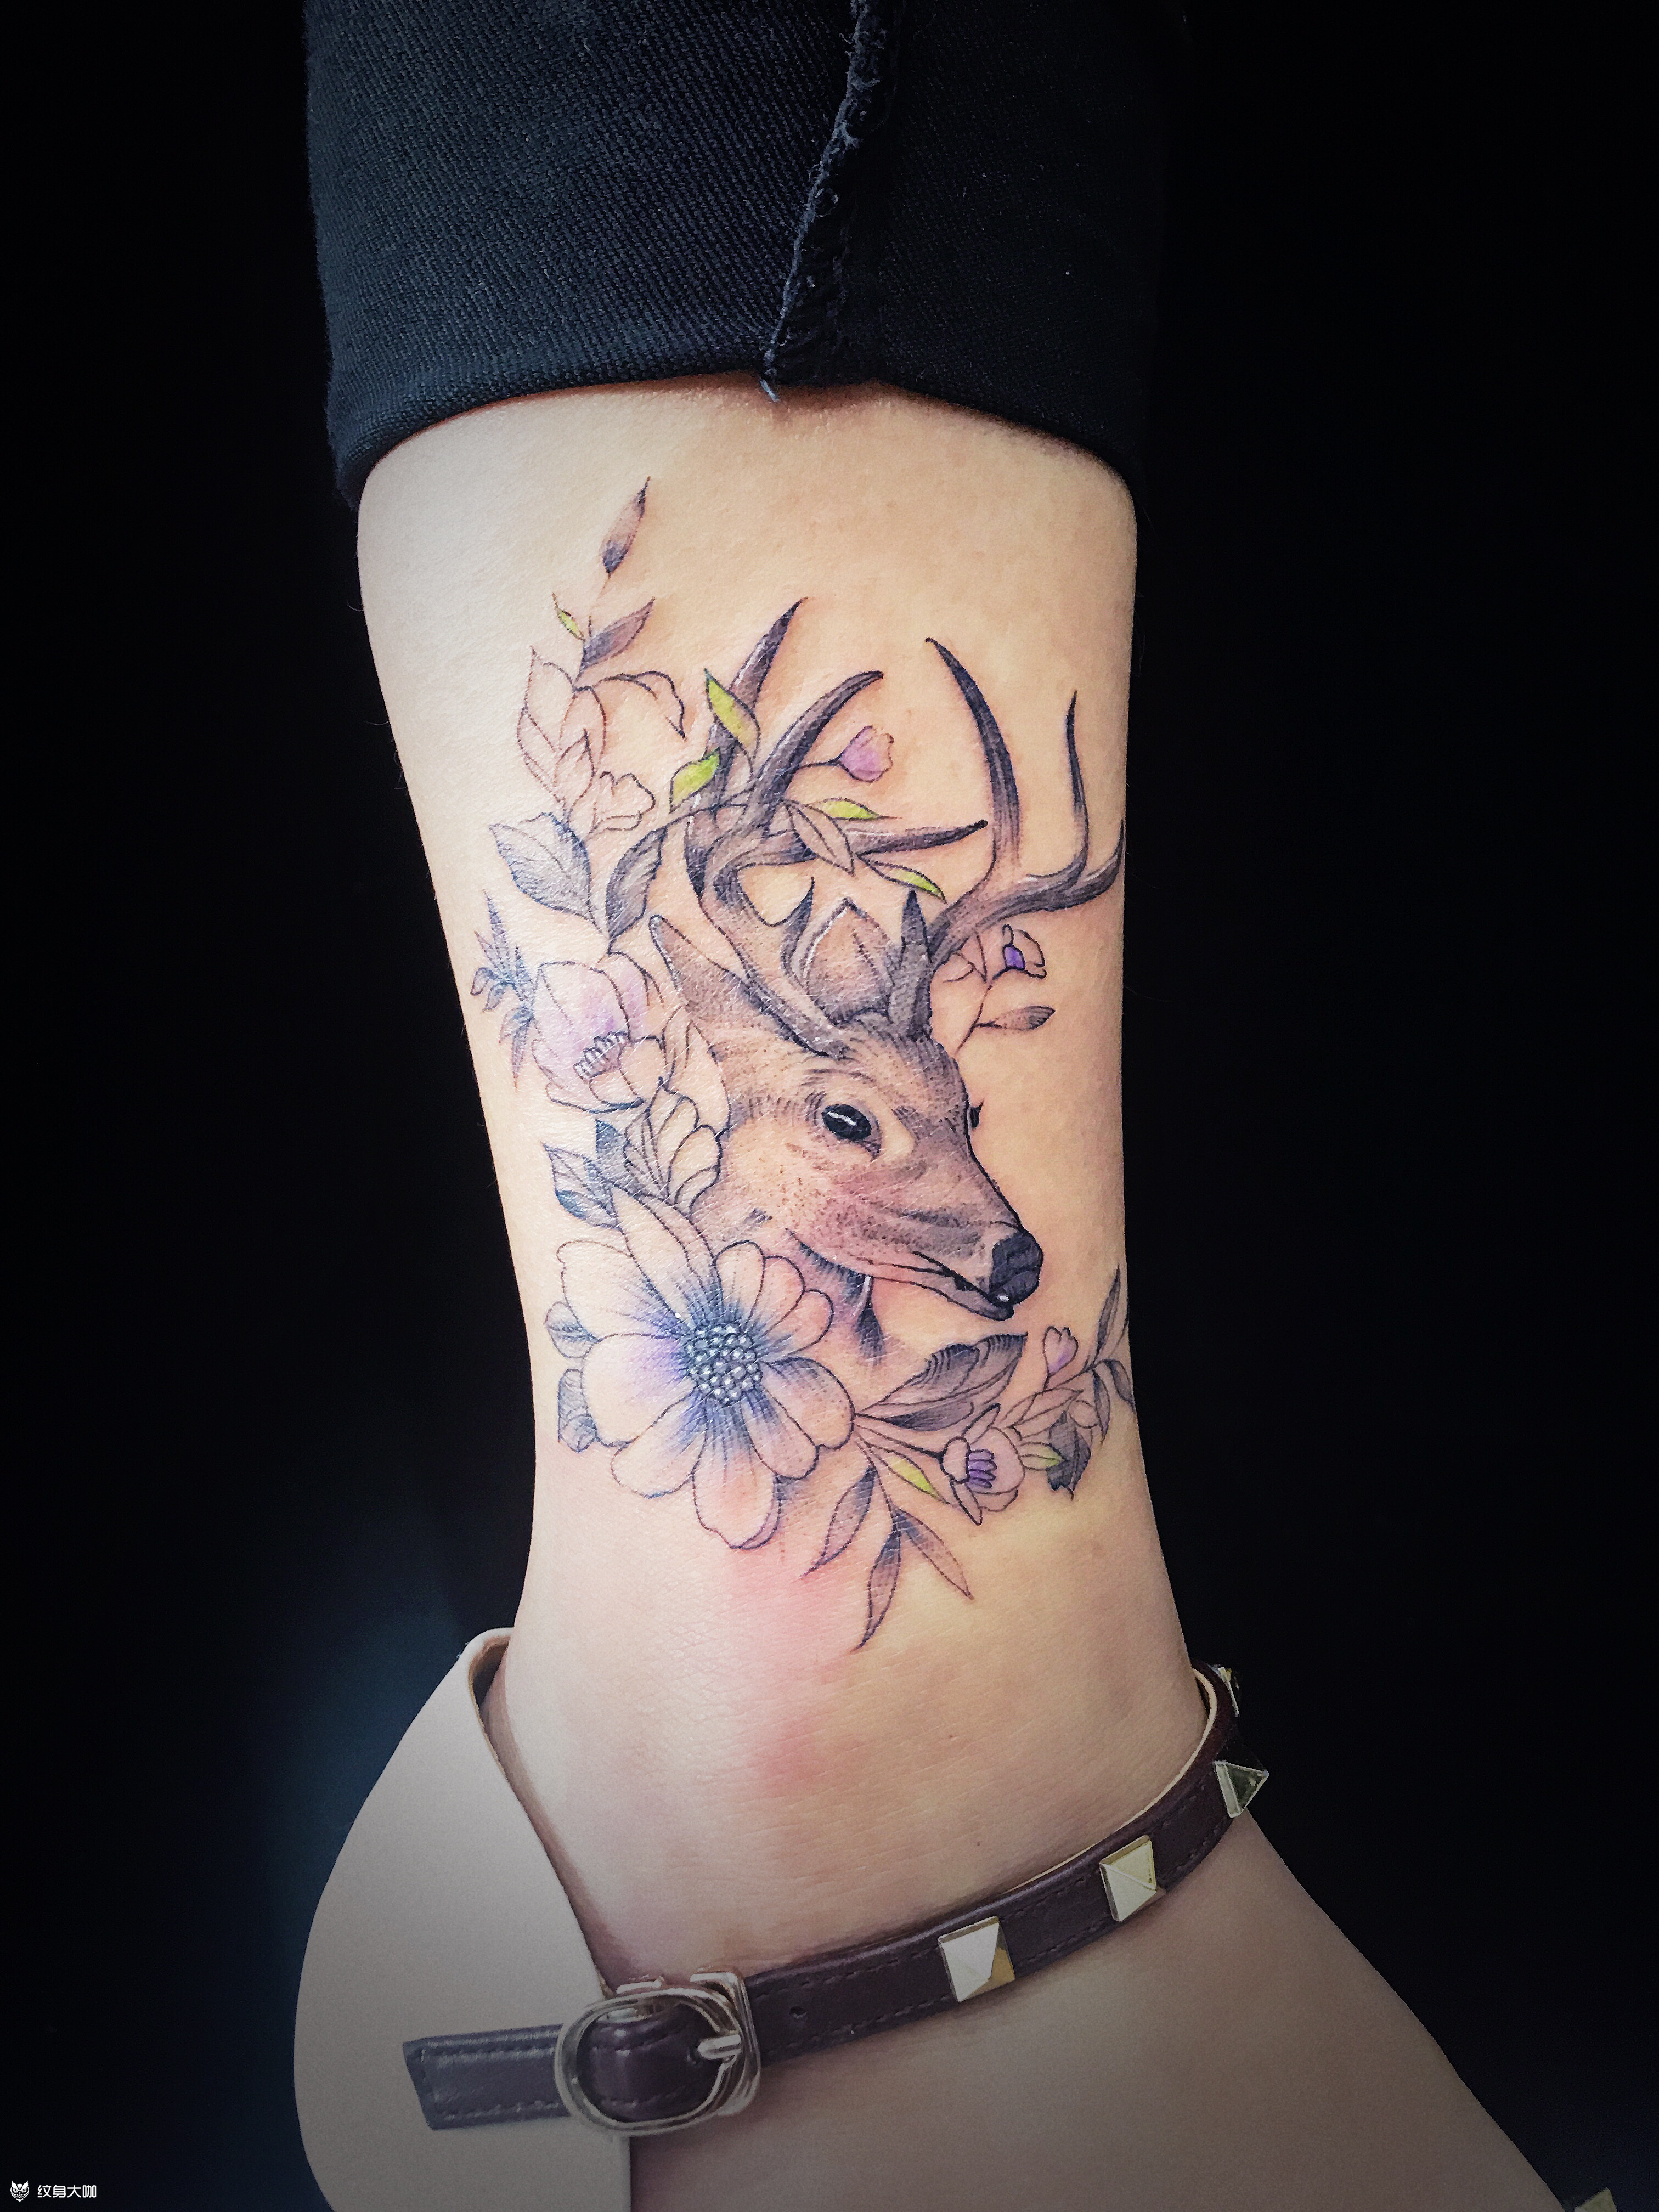 女生纹身纹鹿图片